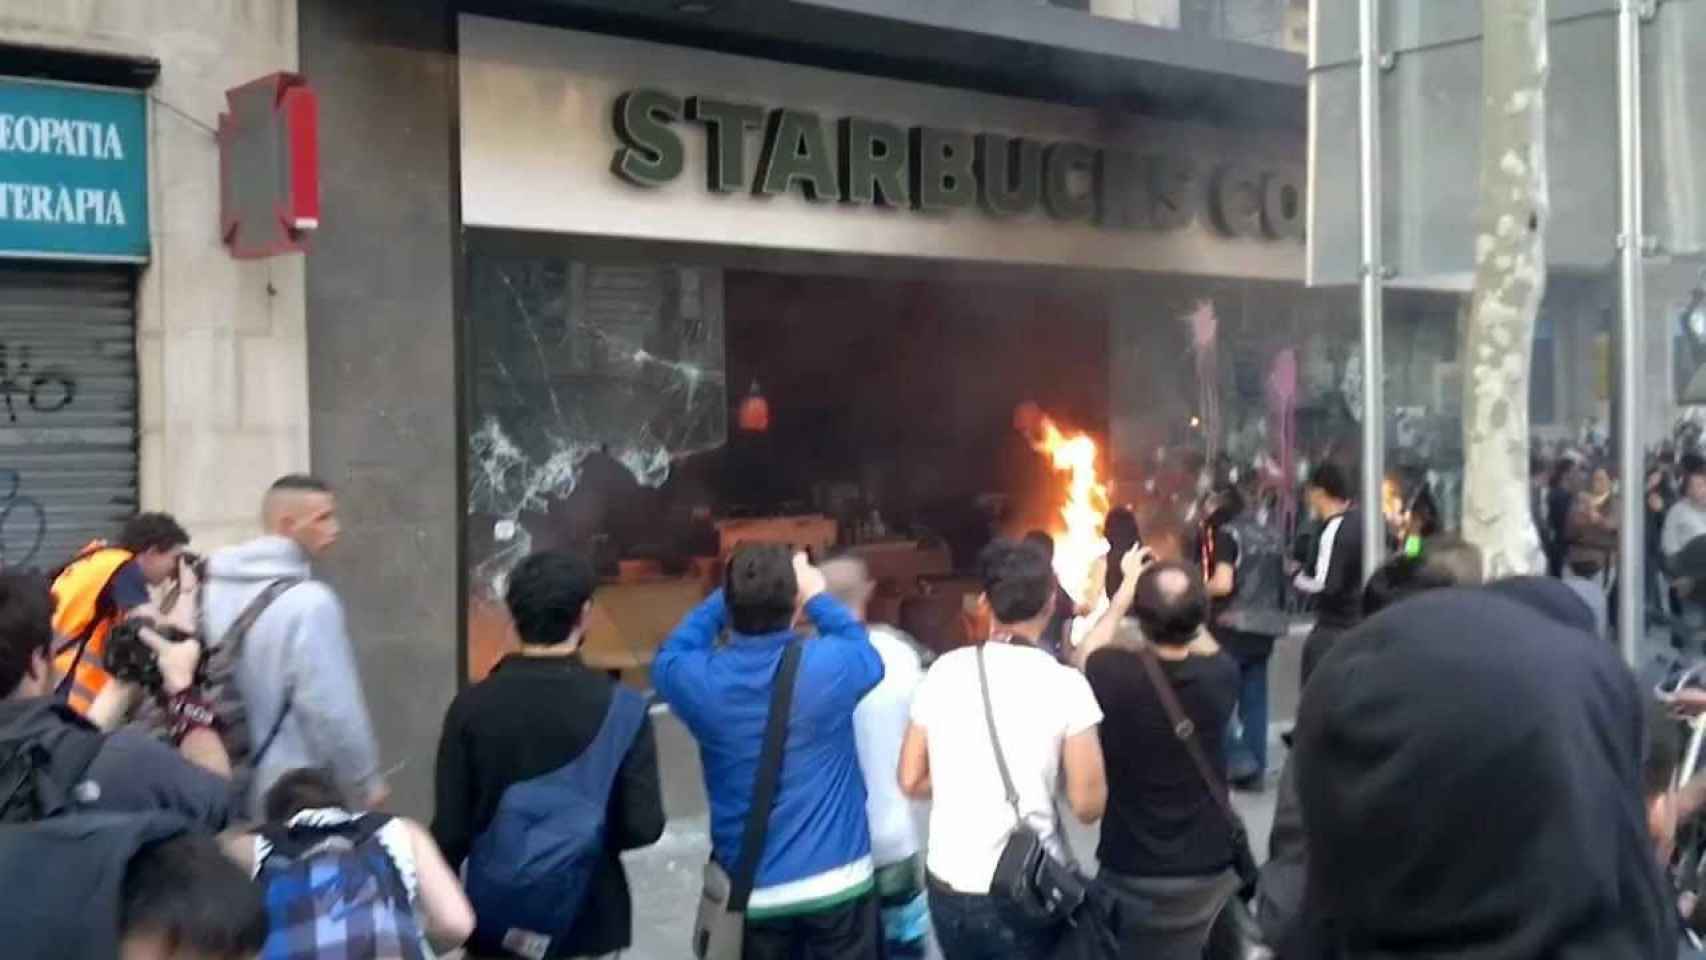 Imagen del incendio en el Starbucks de Barcelona durante la huelga general del 29 de marzo de 2012